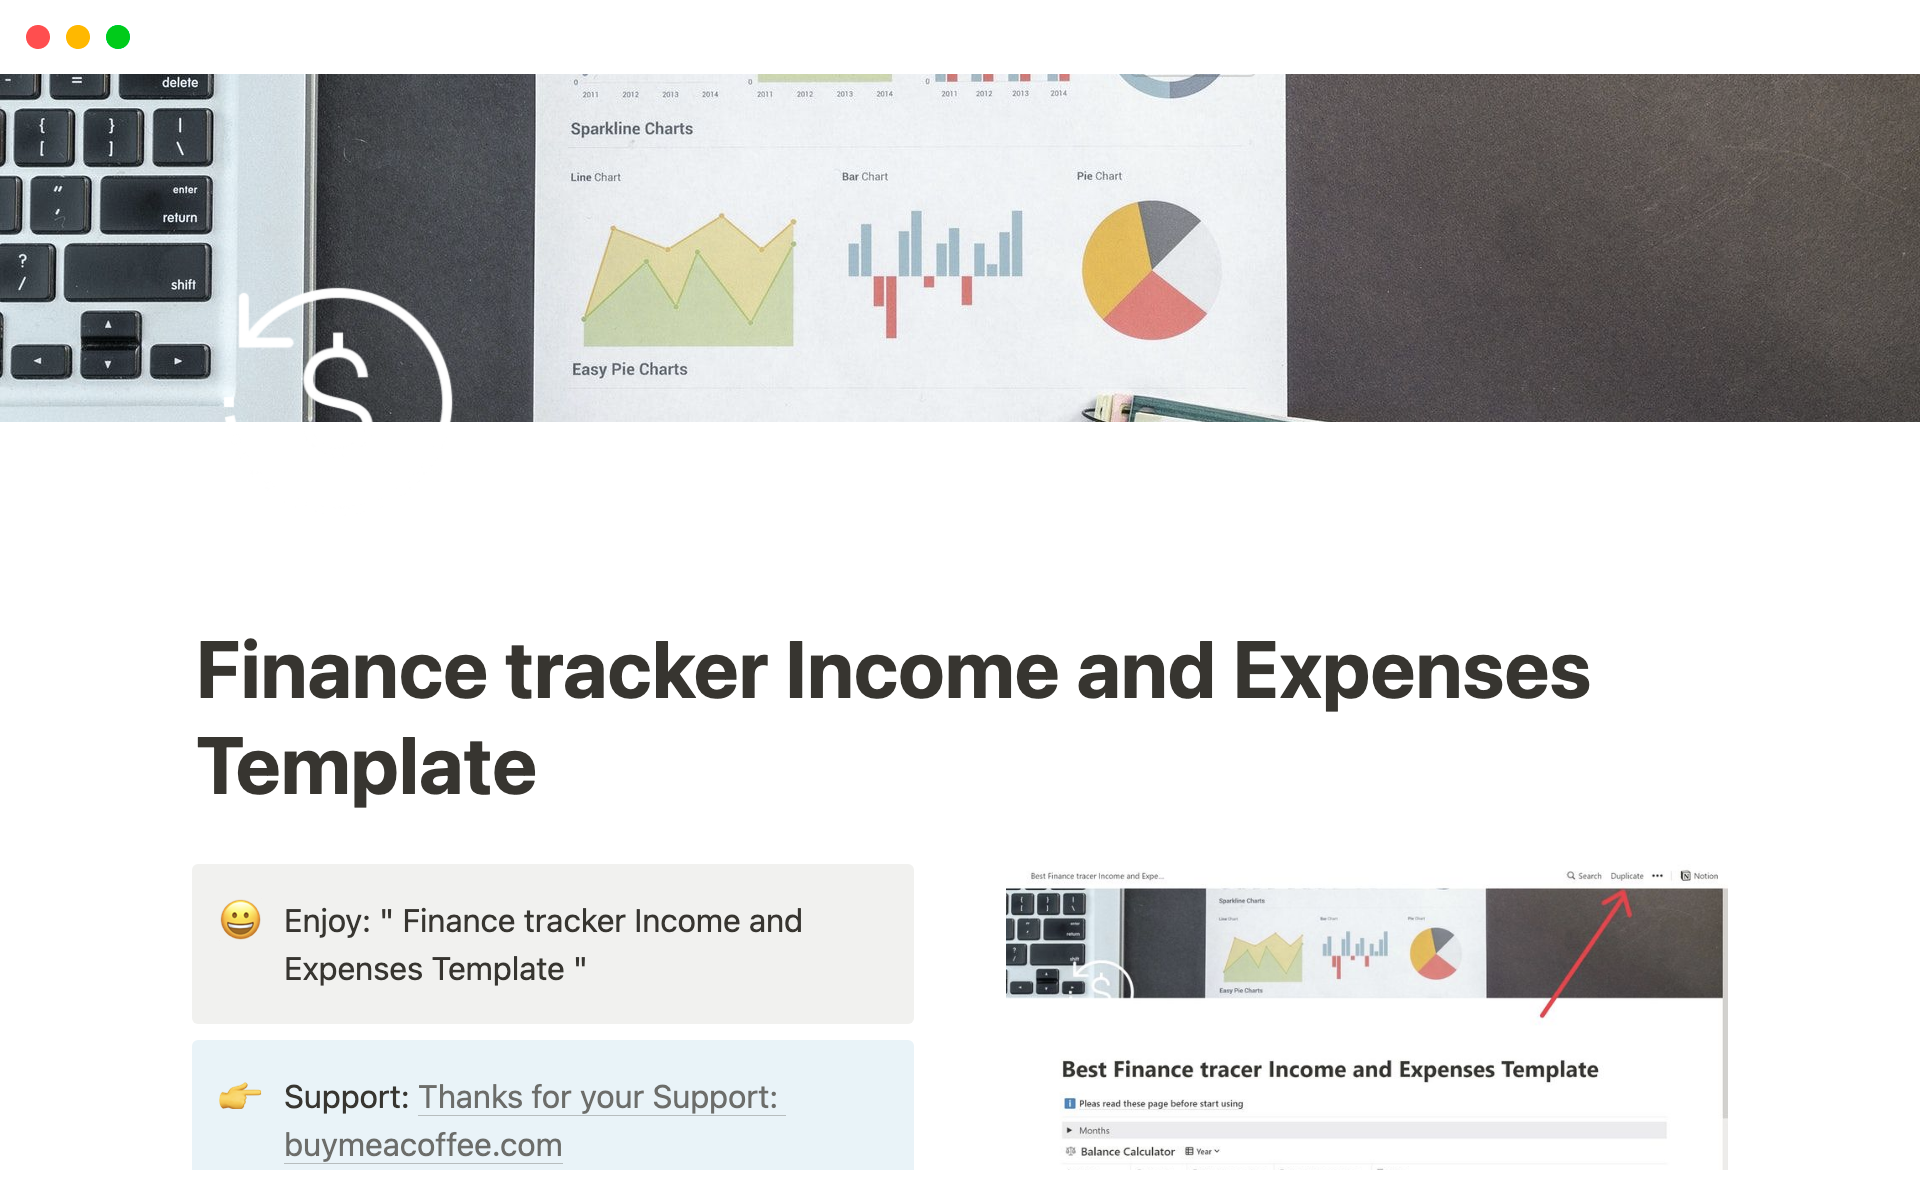 En forhåndsvisning av mal for Finance tracker Income and Expenses Template